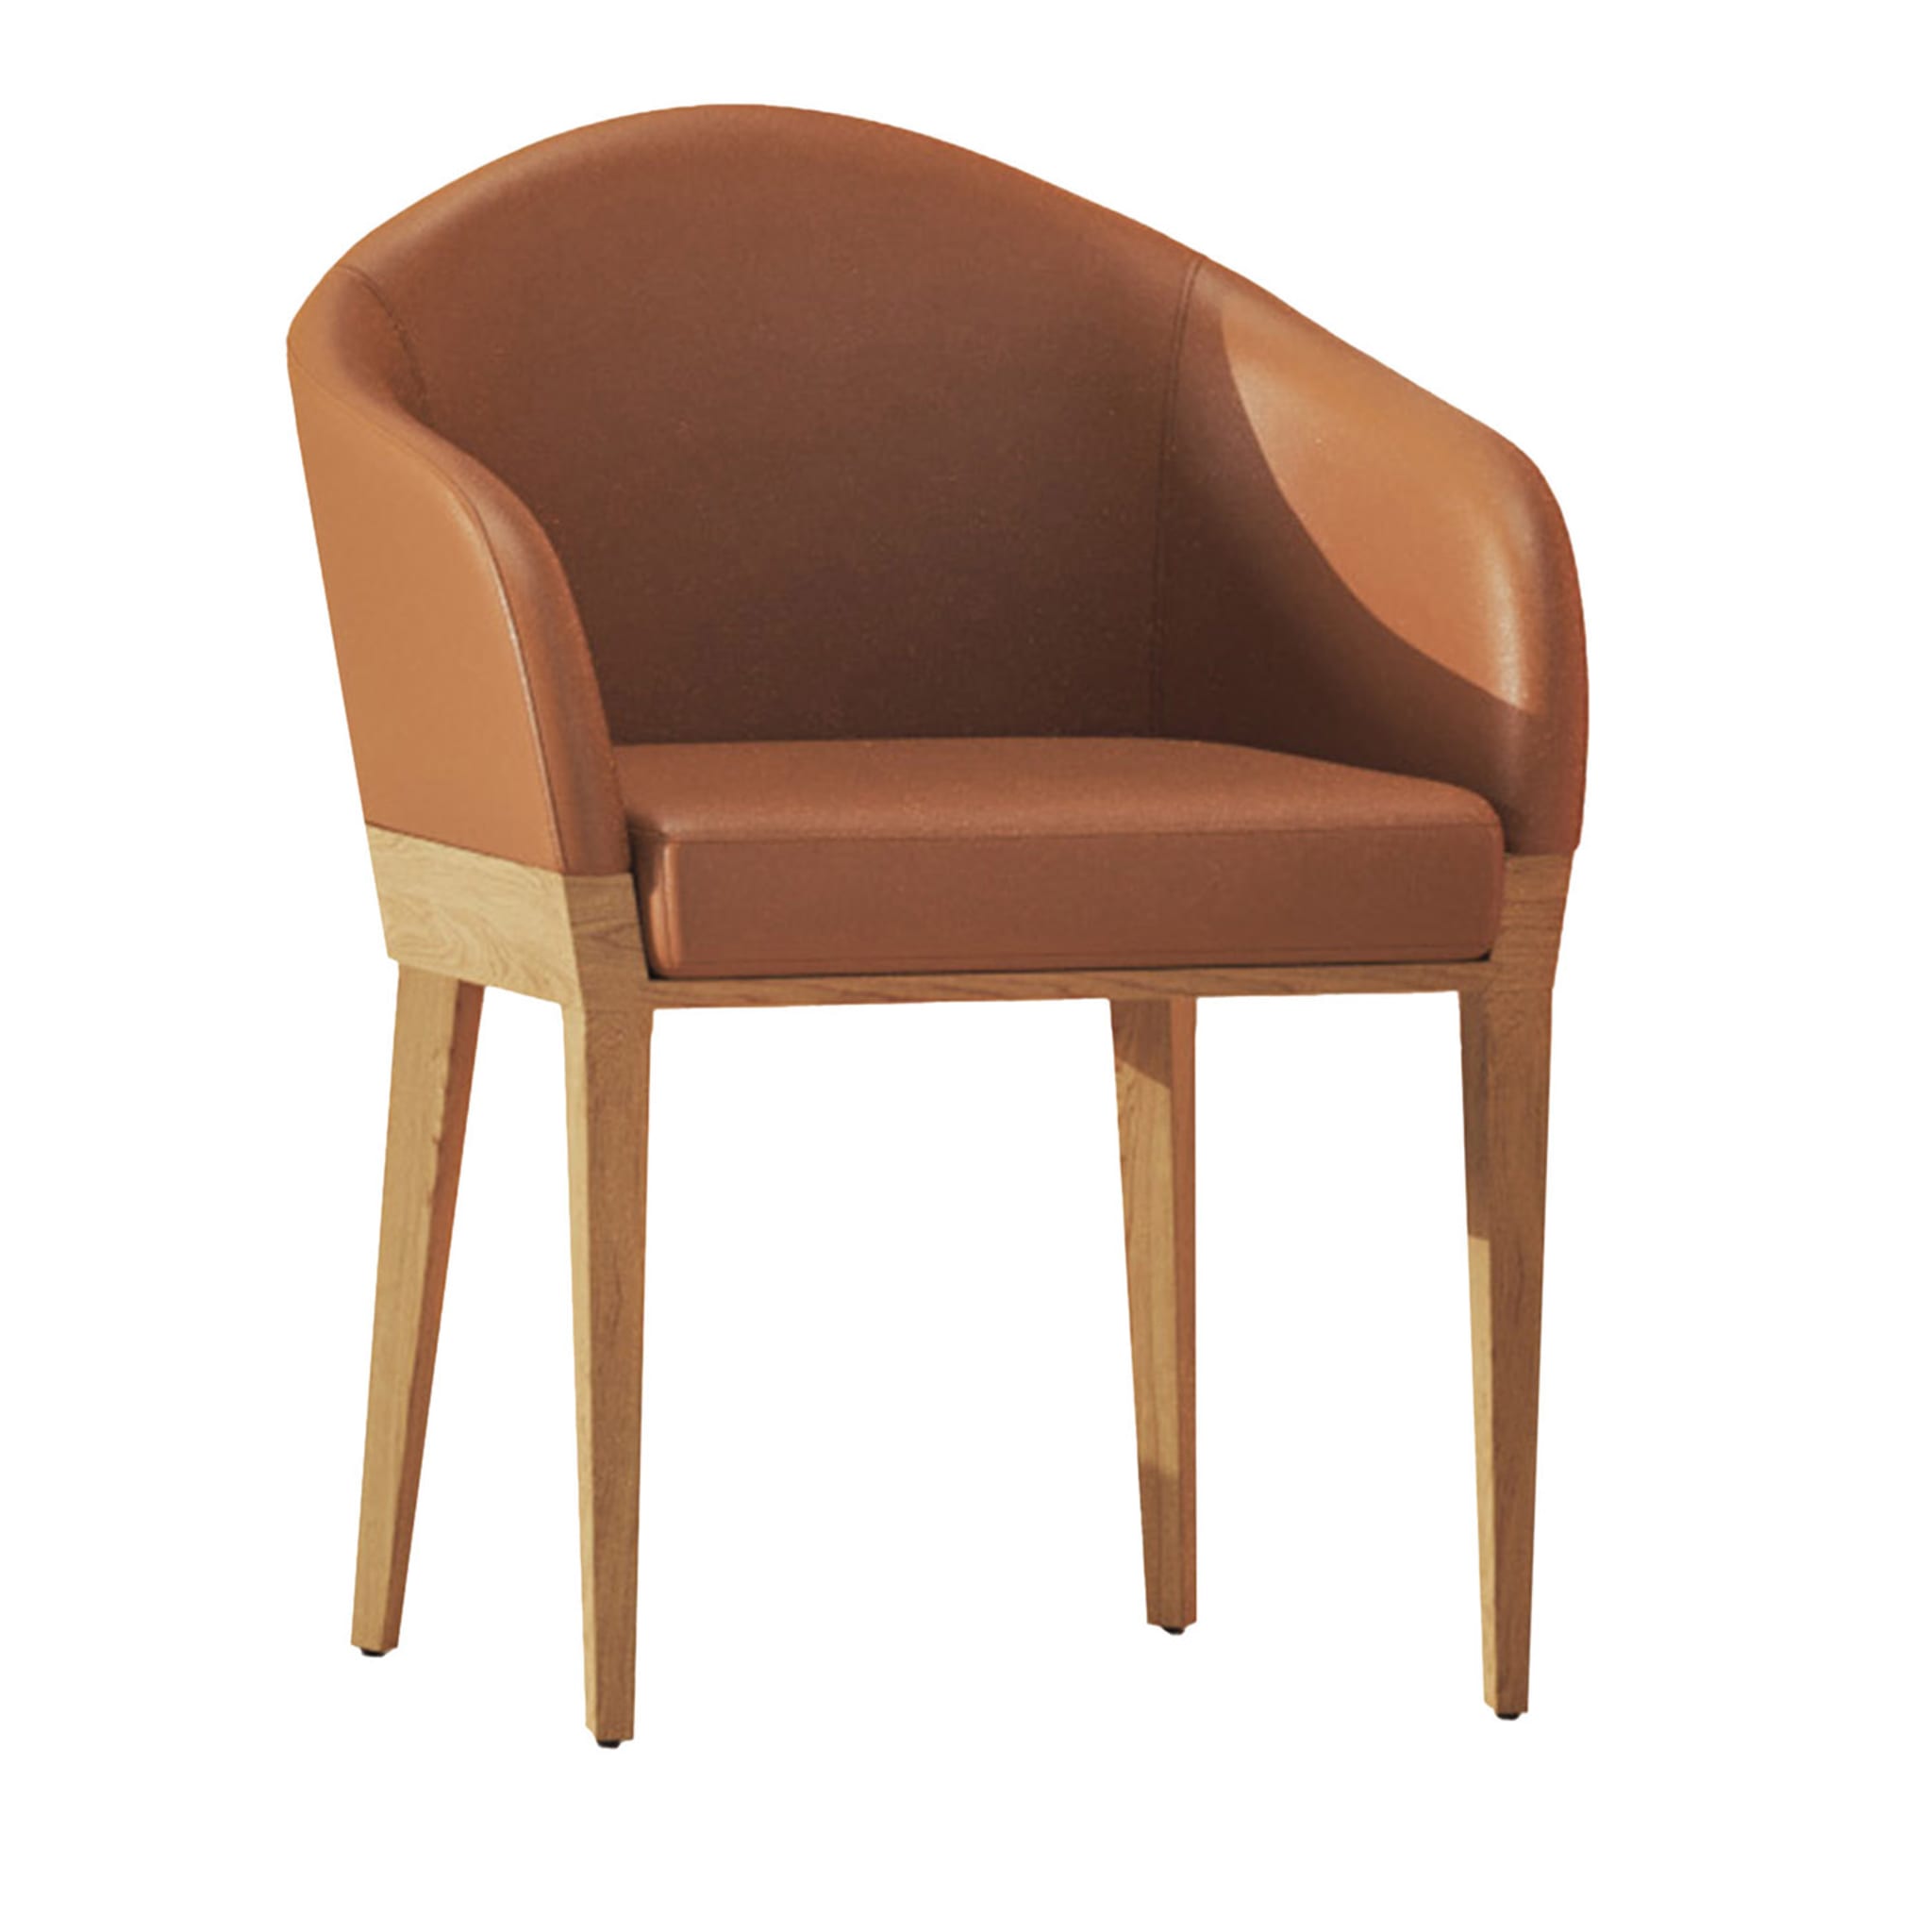 Agata Faux Leather Chair - Main view